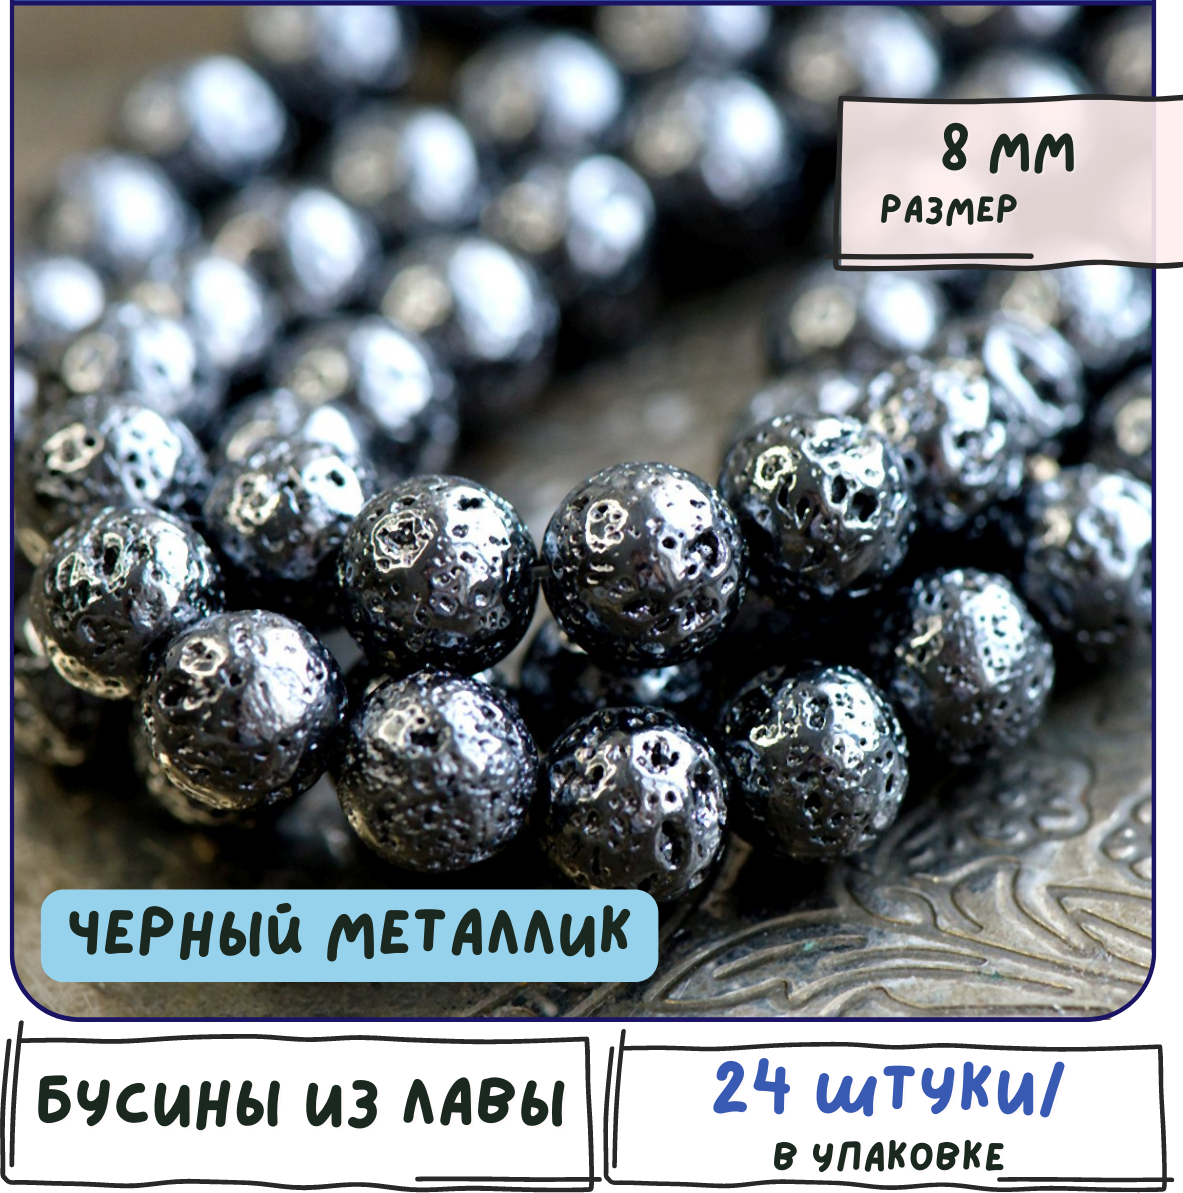 Лава Бусины натуральные 24 шт, цвет черный металлик, размер 8 мм